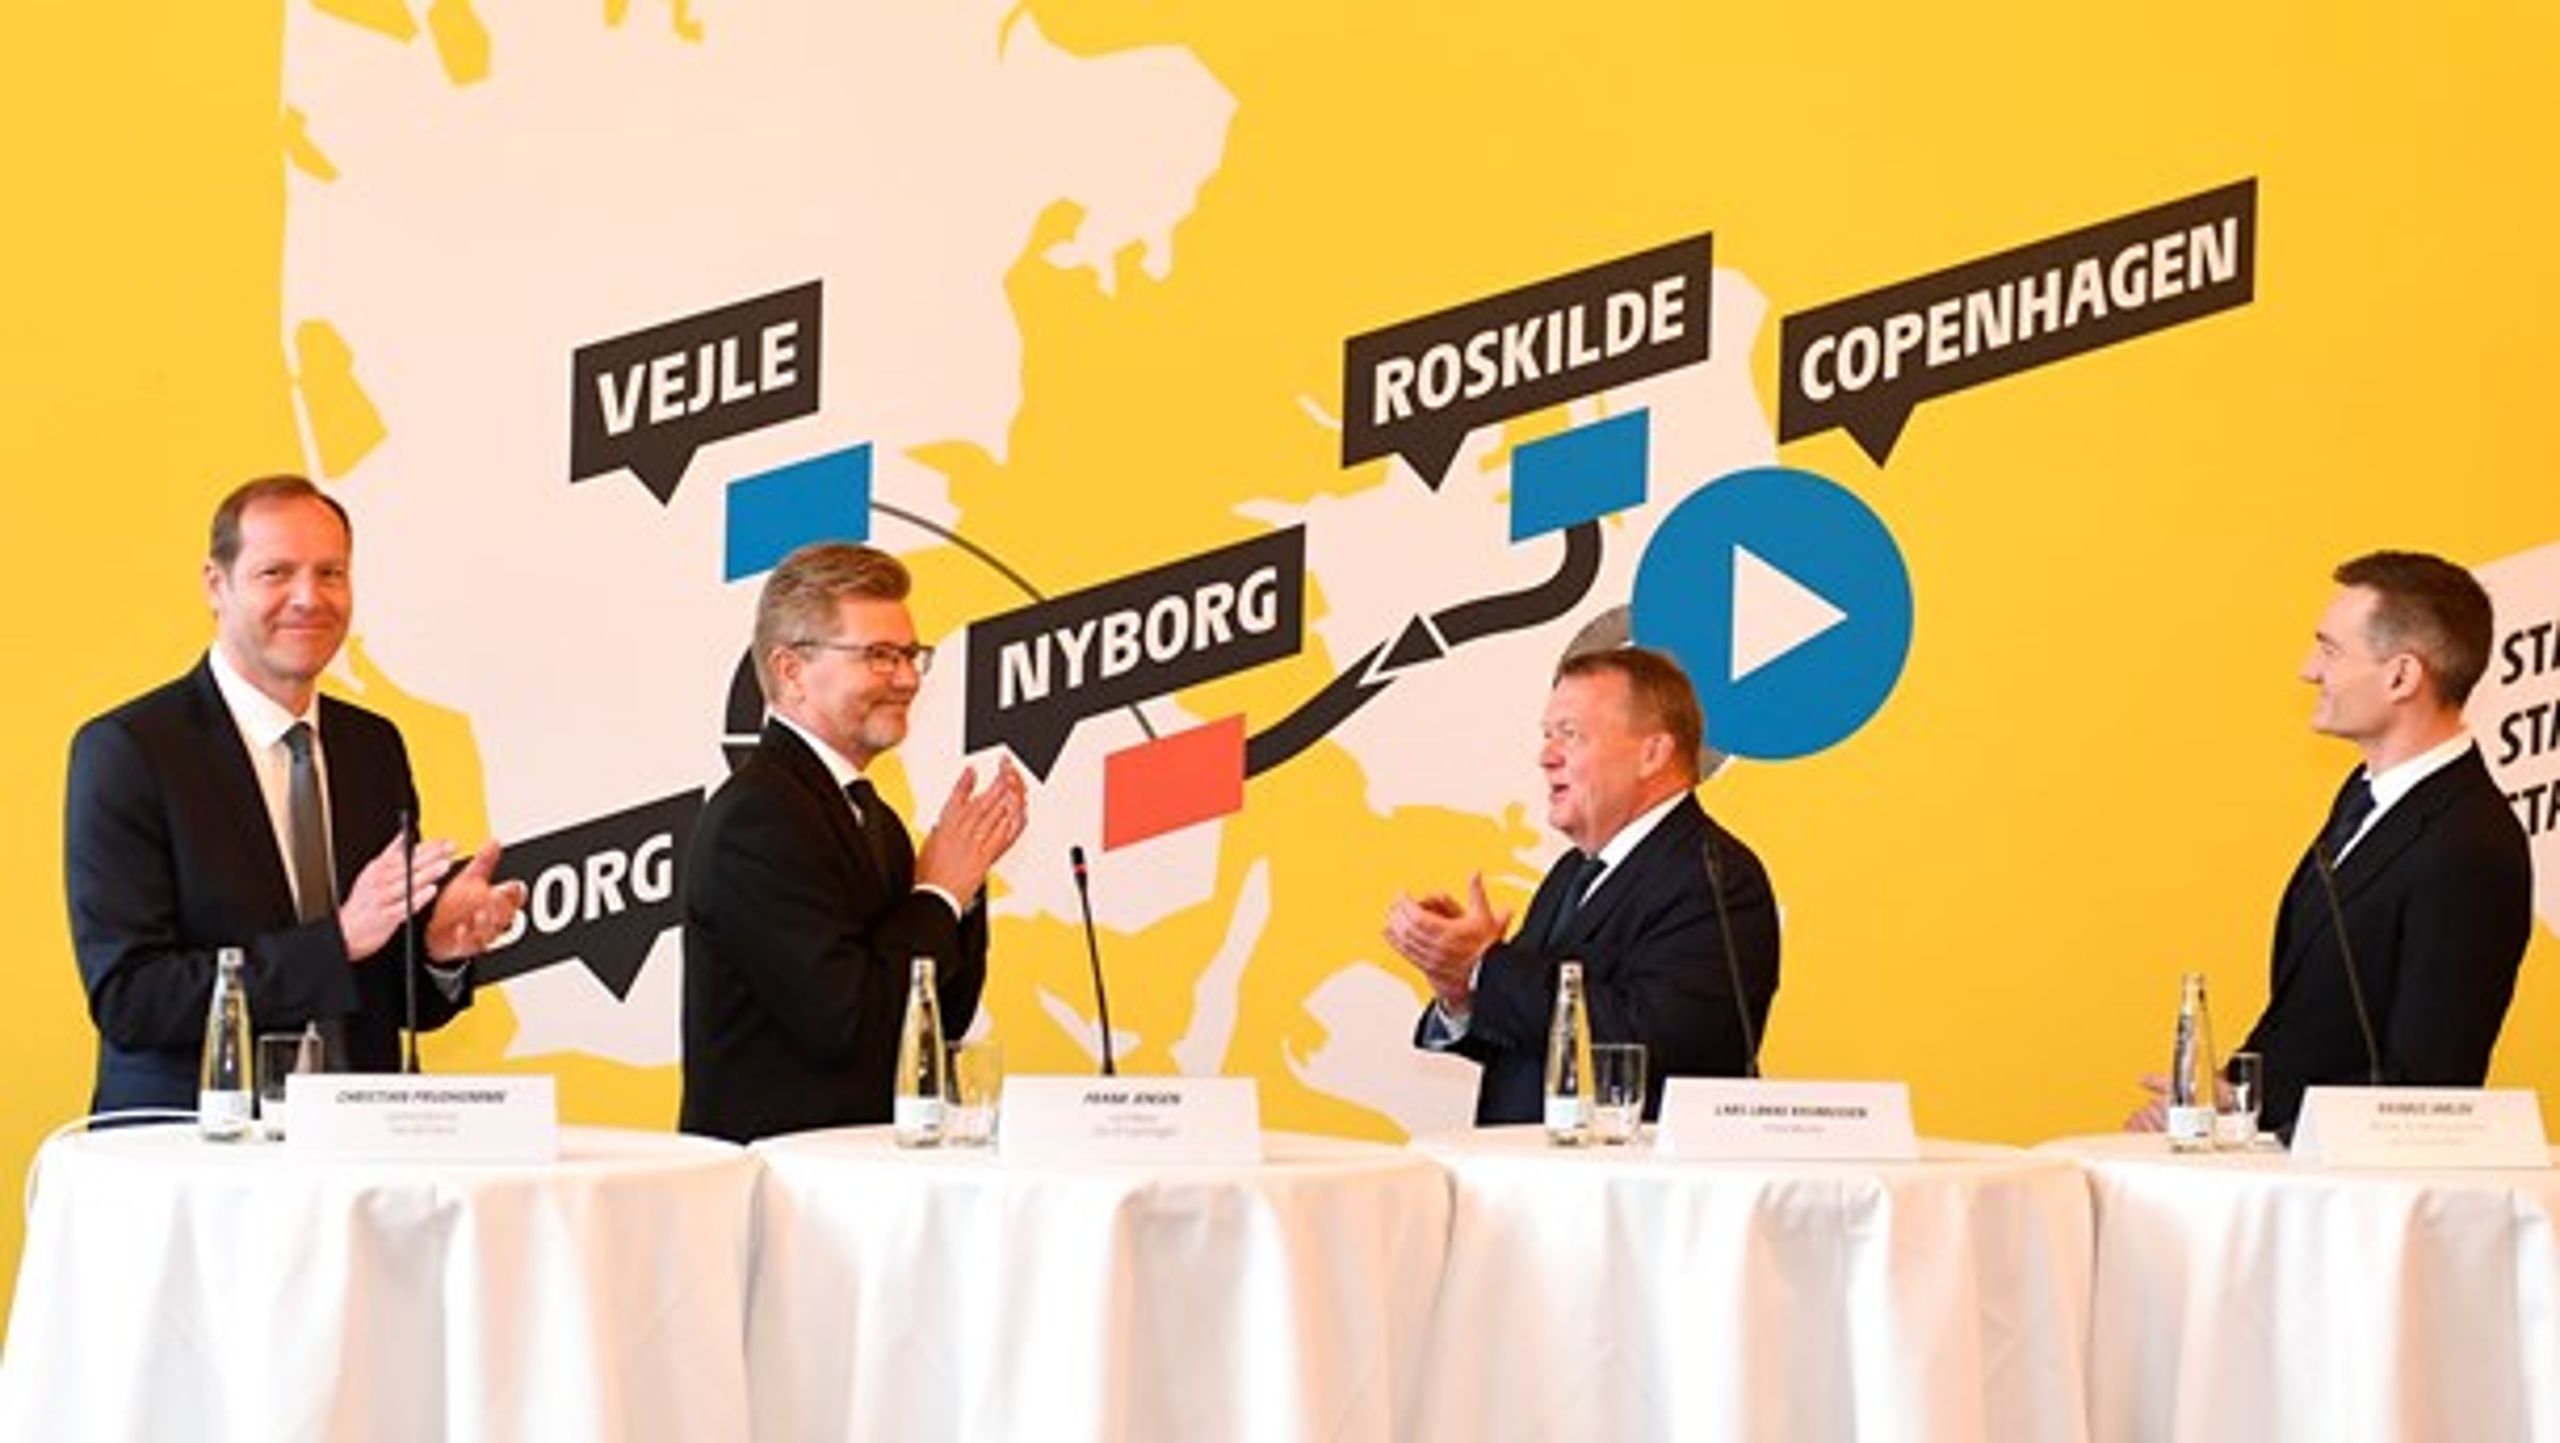 Københavns overborgmester, Frank Jensen (S), siger, at det ikke kommer på tale, at Tour De France ikke kommer til Danmark.